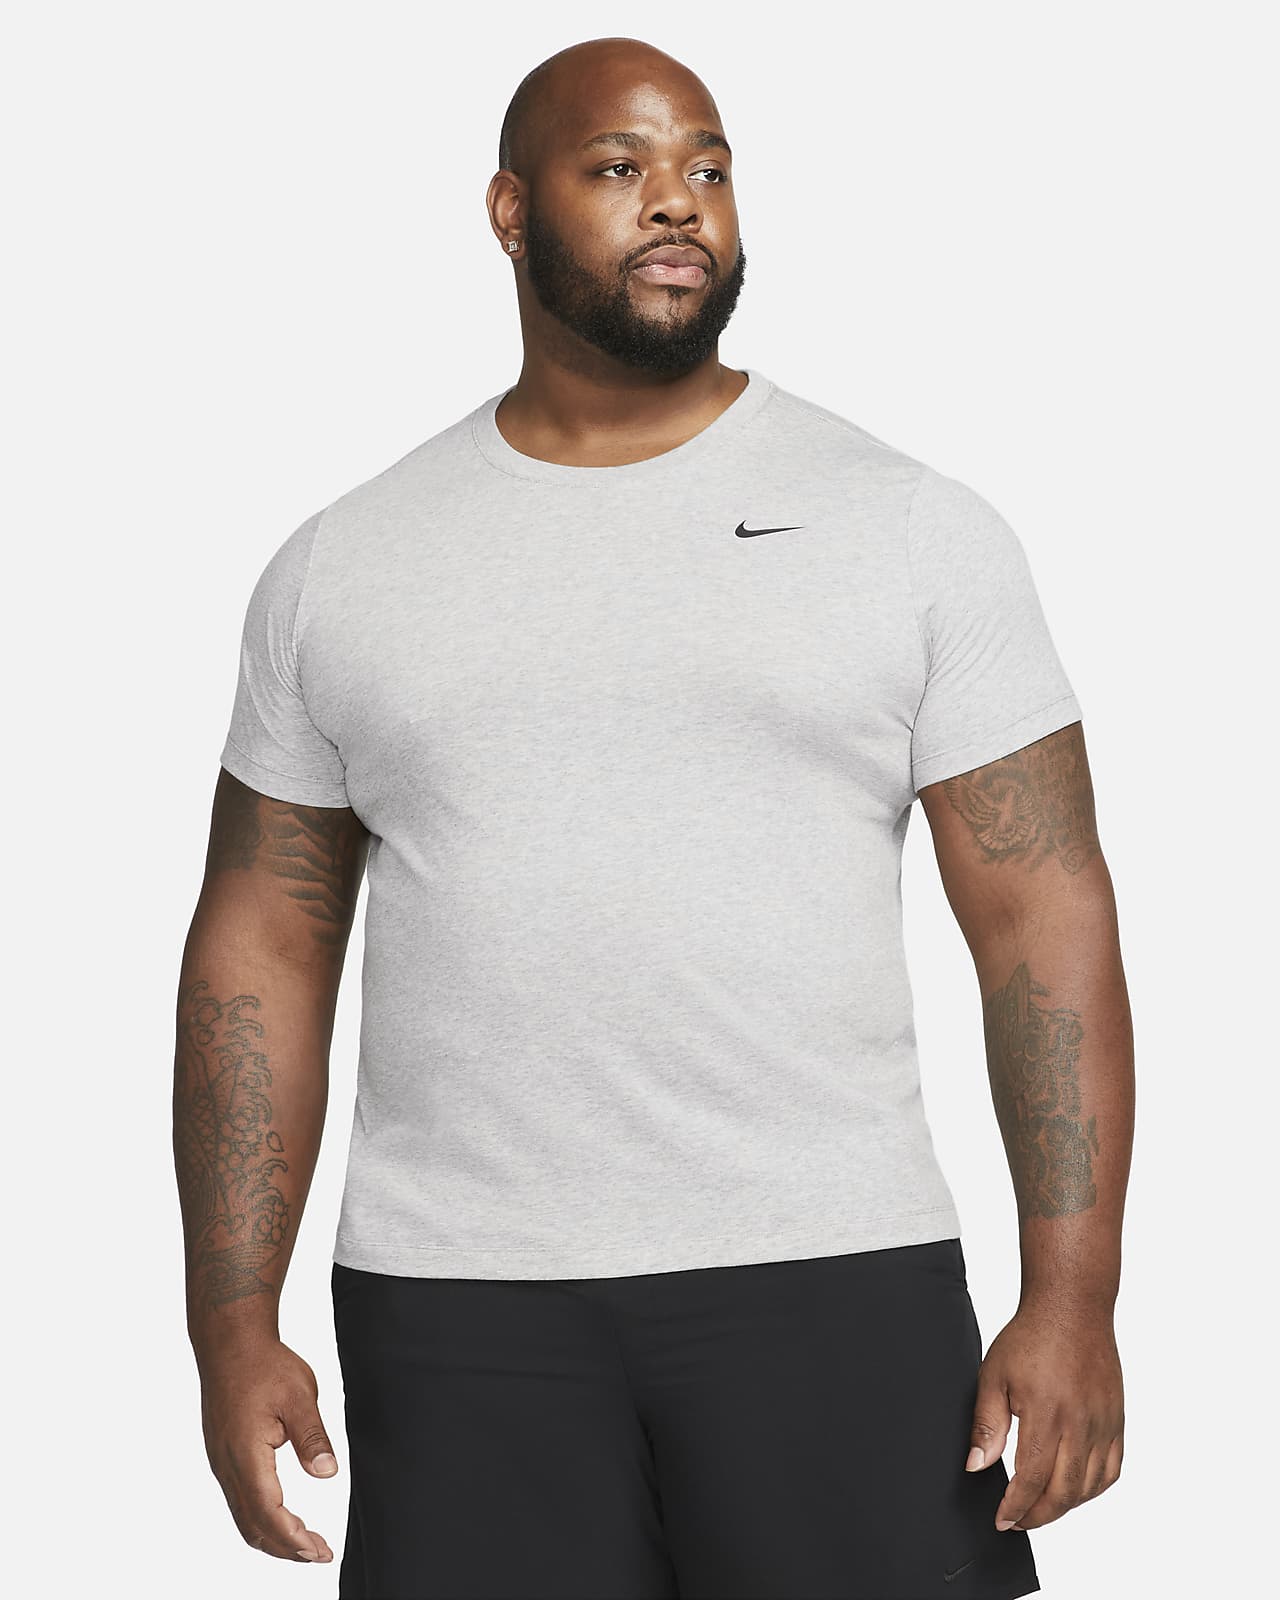 Hauts et T-shirts de Fitness pour Homme. Nike FR